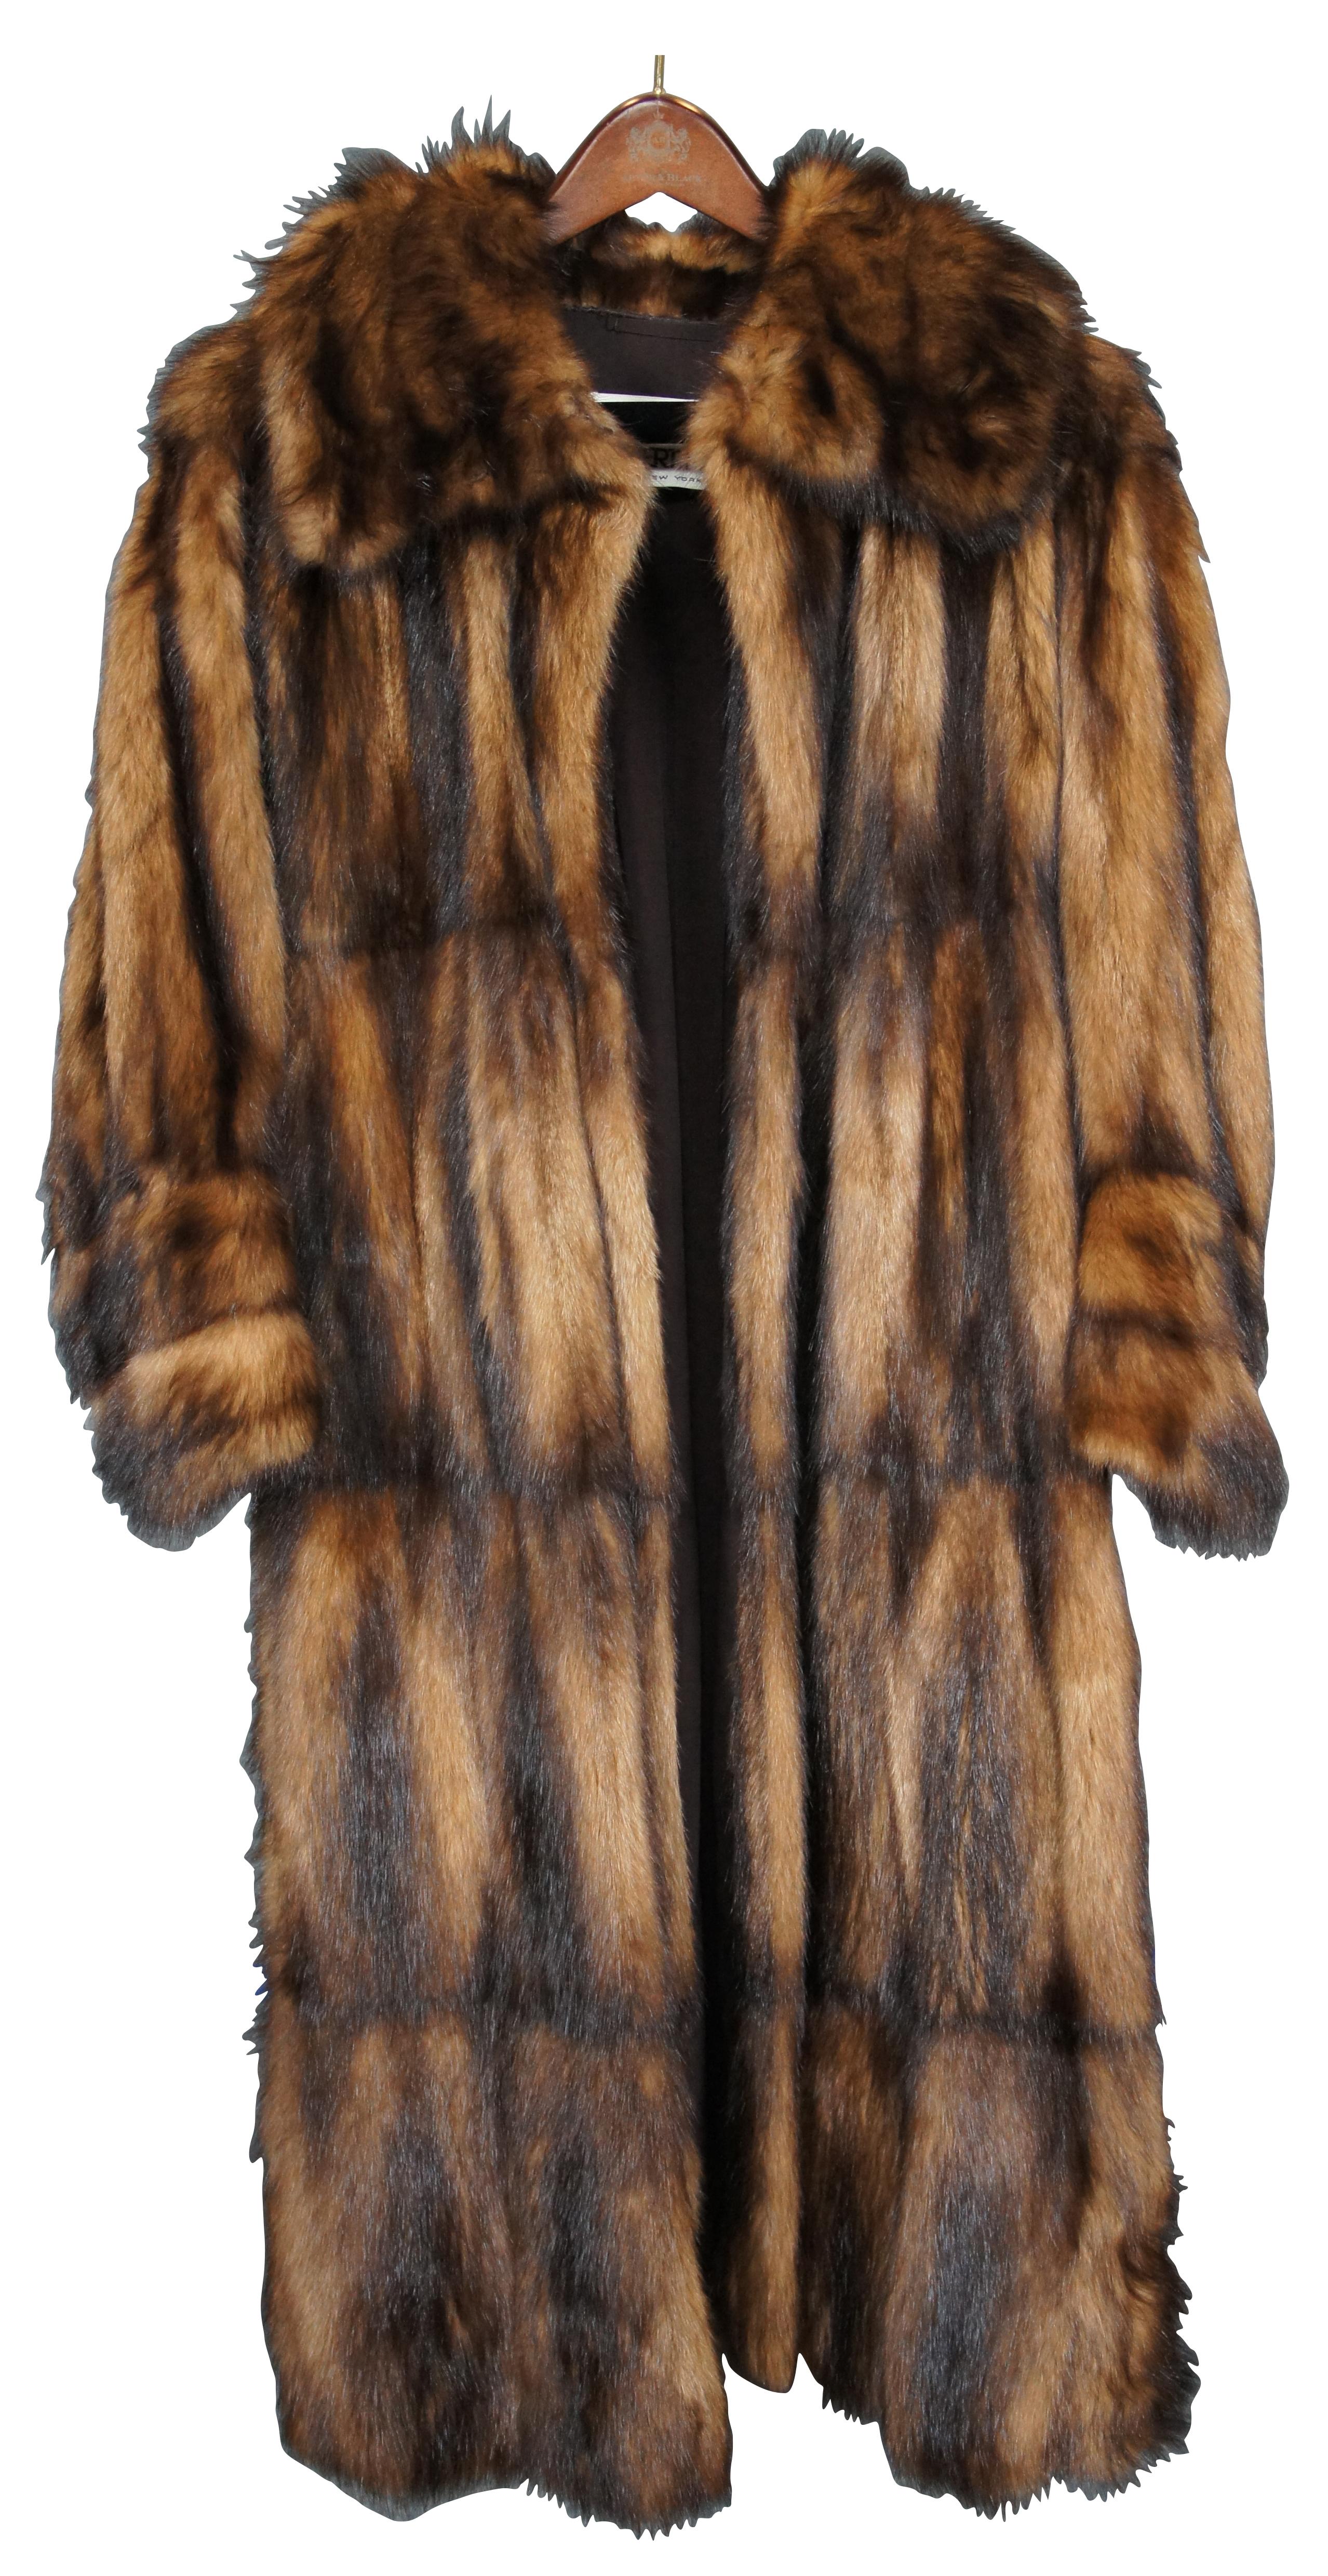 Manteau vintage en fourrure de vison marron à deux tons, pleine longueur avec fermeture à boucle et crochet pivotant et deux poches latérales. Le propriétaire de ce manteau mesure environ 5'2'', 110lbs.

Mesures : Épaules - 20